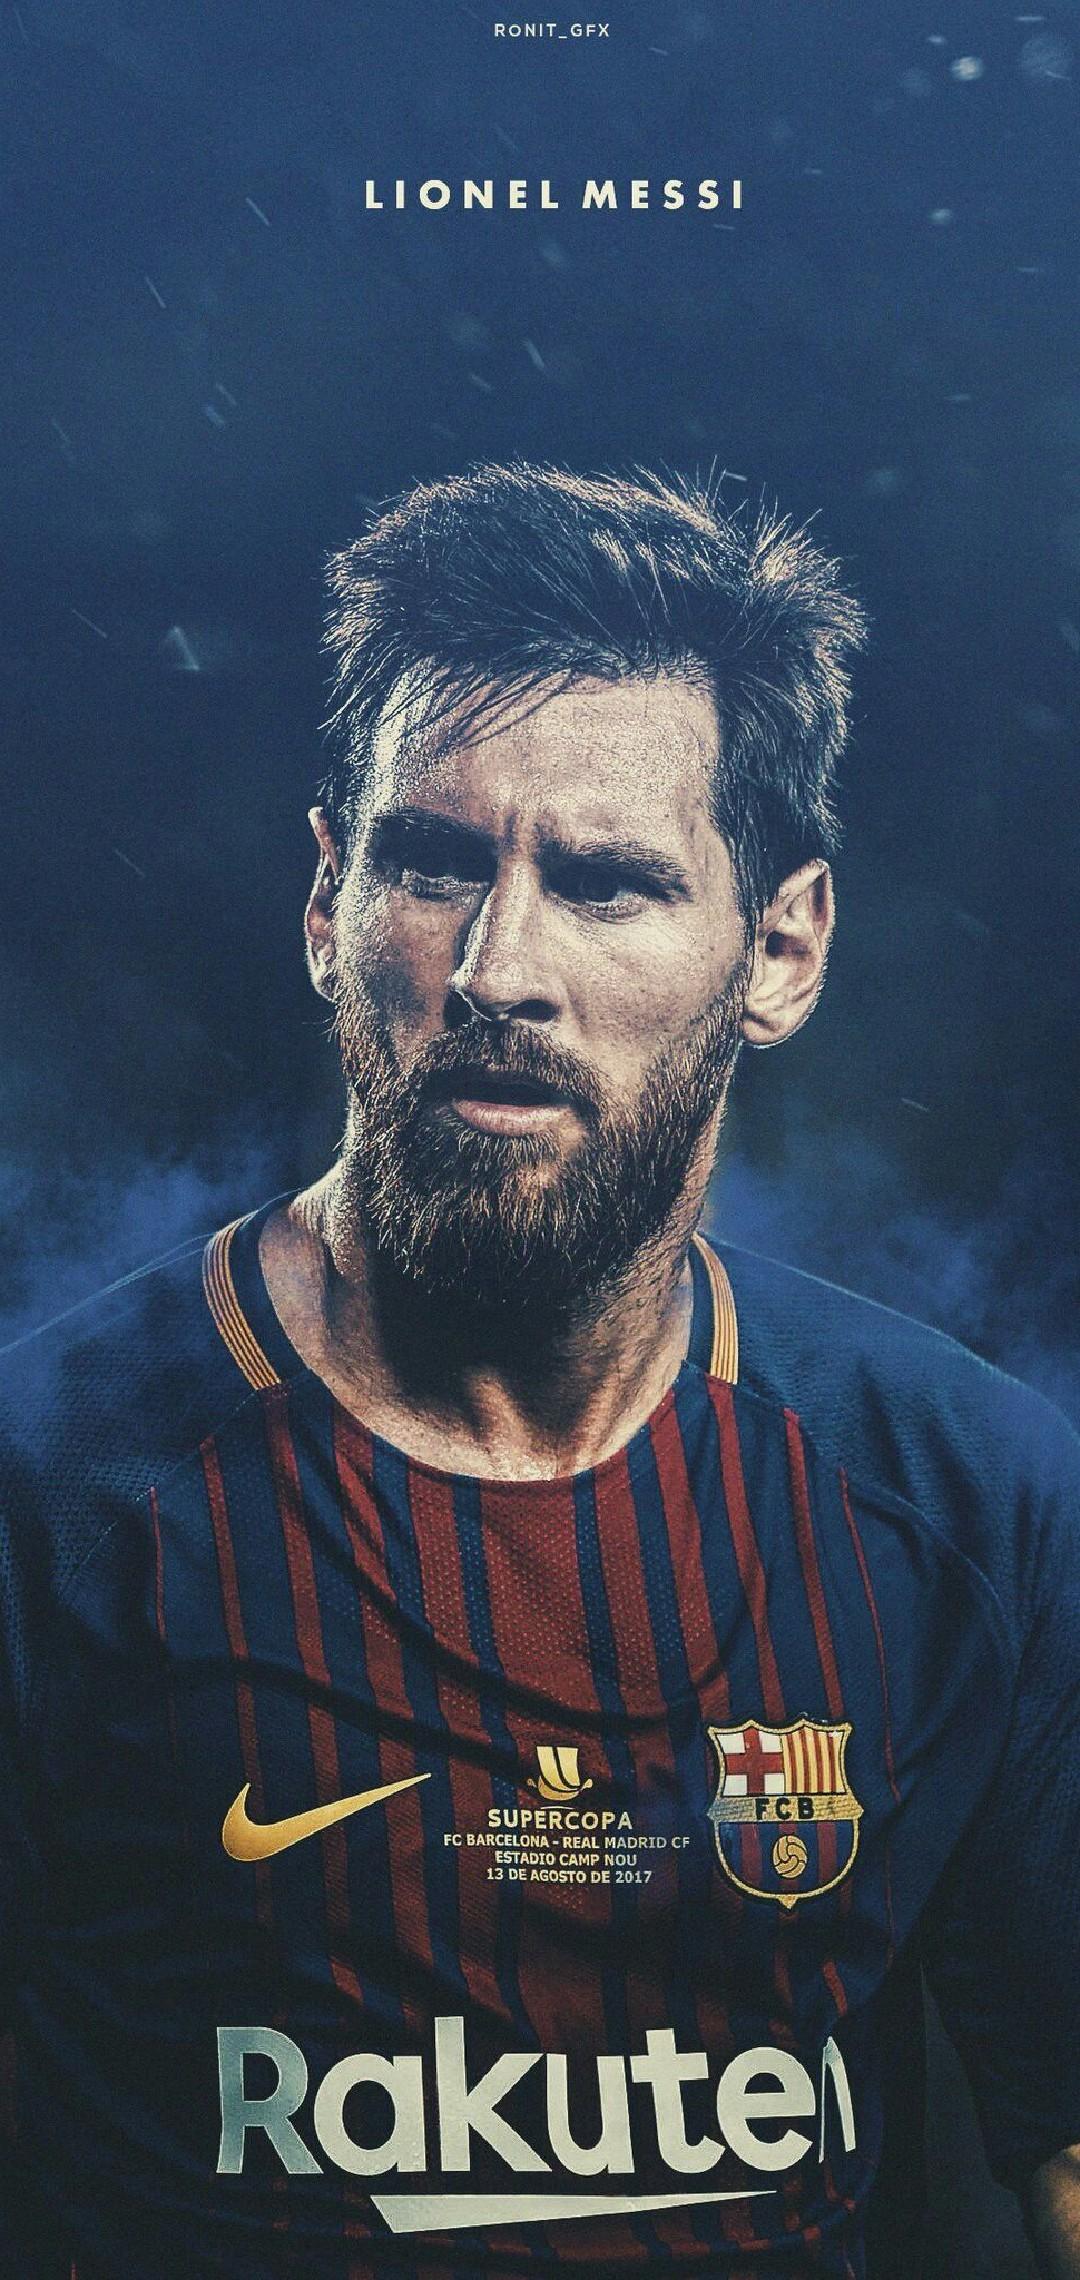 Hãy ngắm nhìn bức ảnh chân dung Messi đẹp như tranh vẽ bằng việc tải về hình nền phong cách Messi. Bức ảnh này thể hiện sự uyển chuyển và khả năng sáng tạo của cầu thủ huyền thoại này trên sân cỏ. Sự quyến rũ của Messi sẽ khiến bạn thích thú.